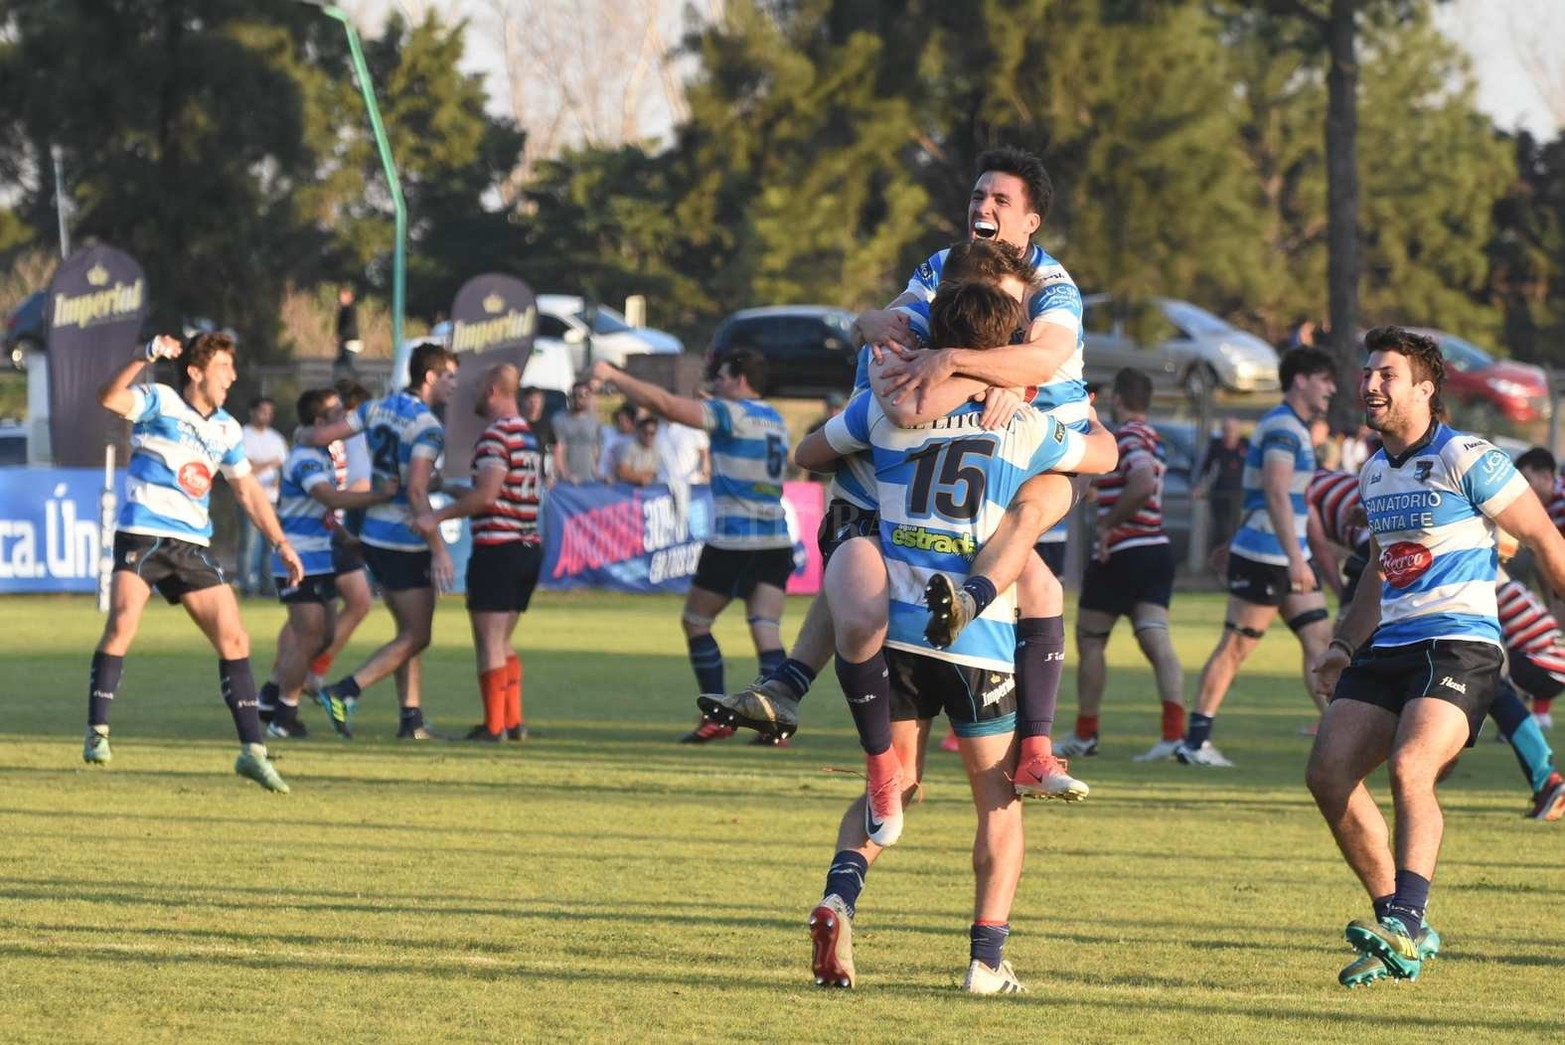 CRAI venció a Santa Fe Rugby Club por 15 a 9, consagrándose campeón del Torneo Oficial 2021 "Federico Caputto" de la Unión Santafesina de Rugby.